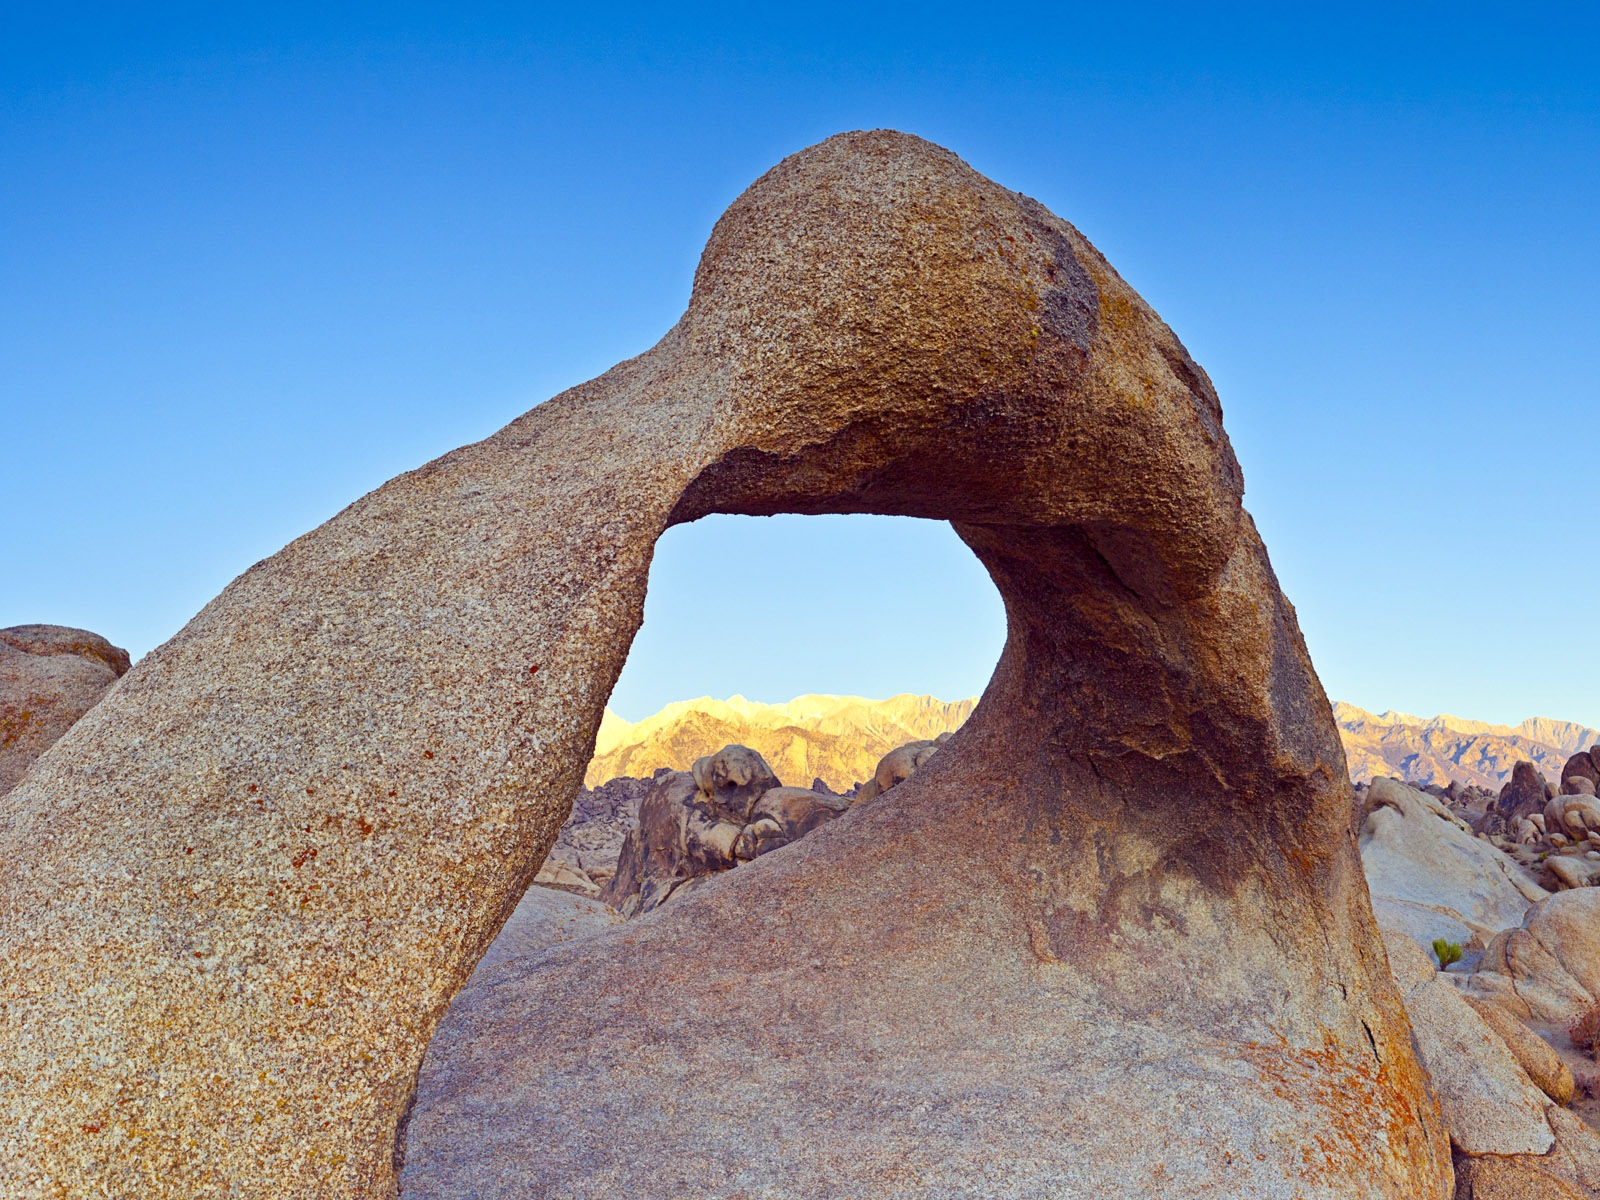 Les déserts chauds et arides, de Windows 8 fonds d'écran widescreen panoramique #5 - 1600x1200